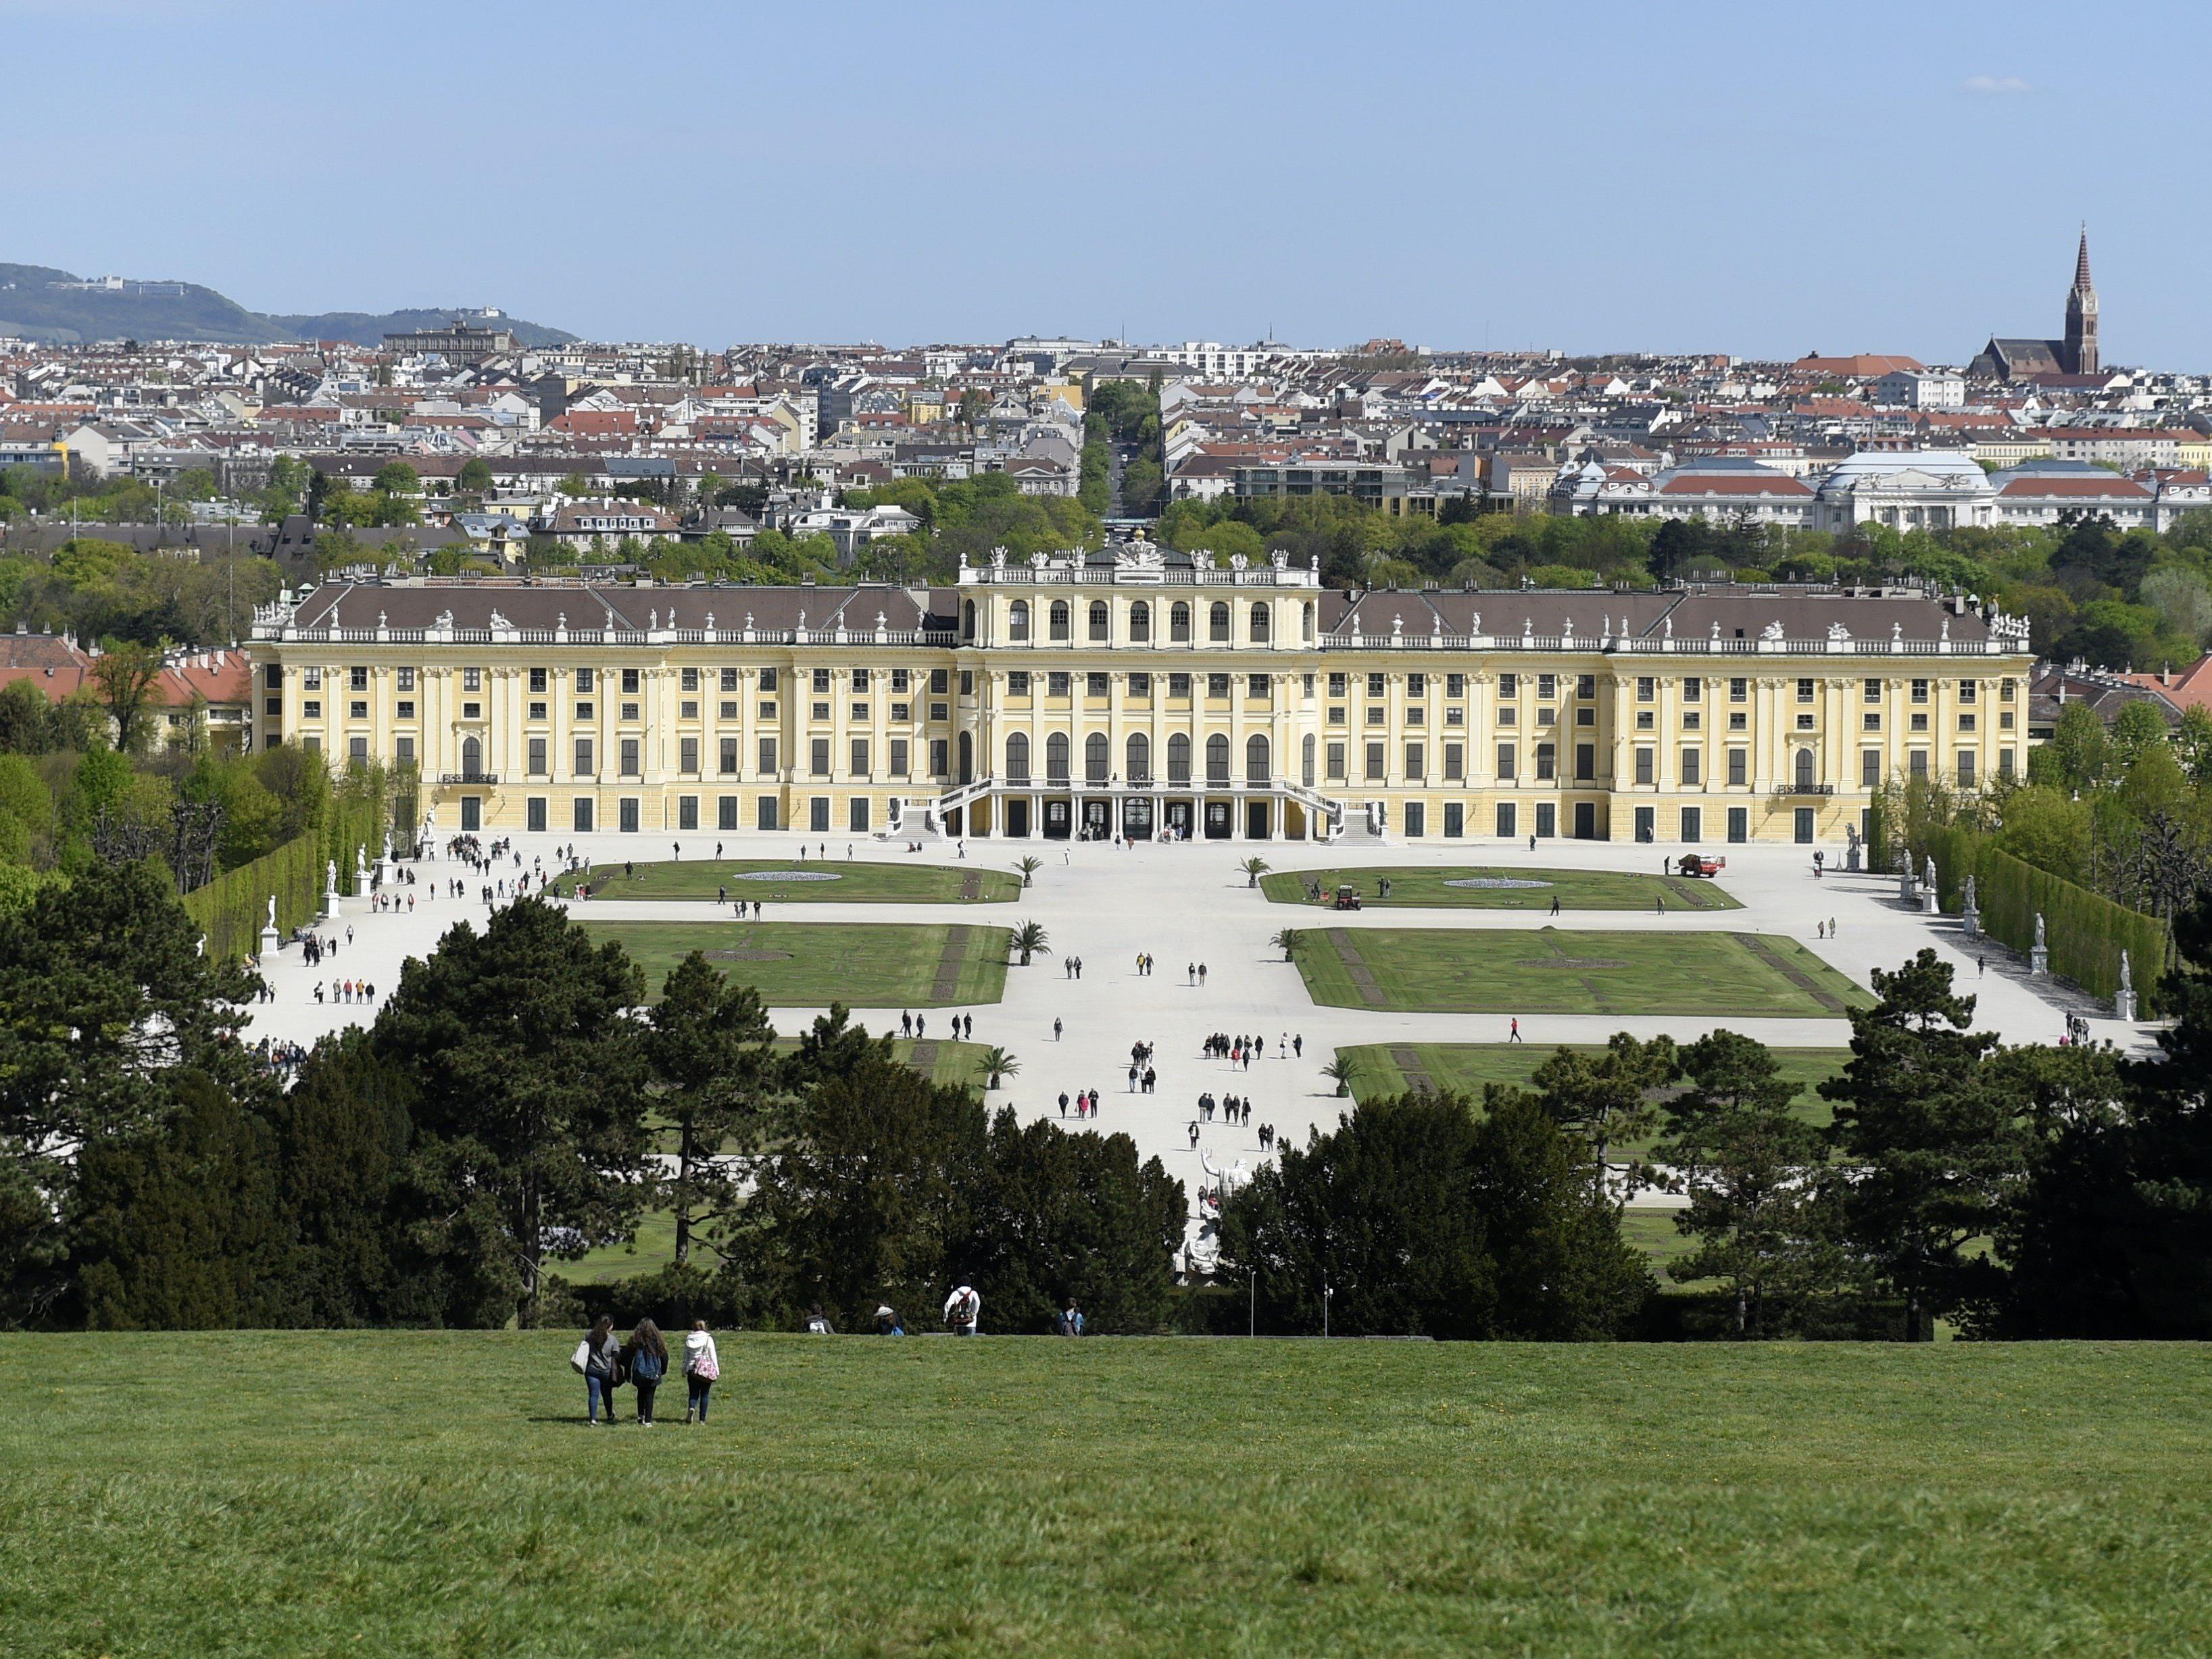 Wien bleibt ein Tourismusmagnet.